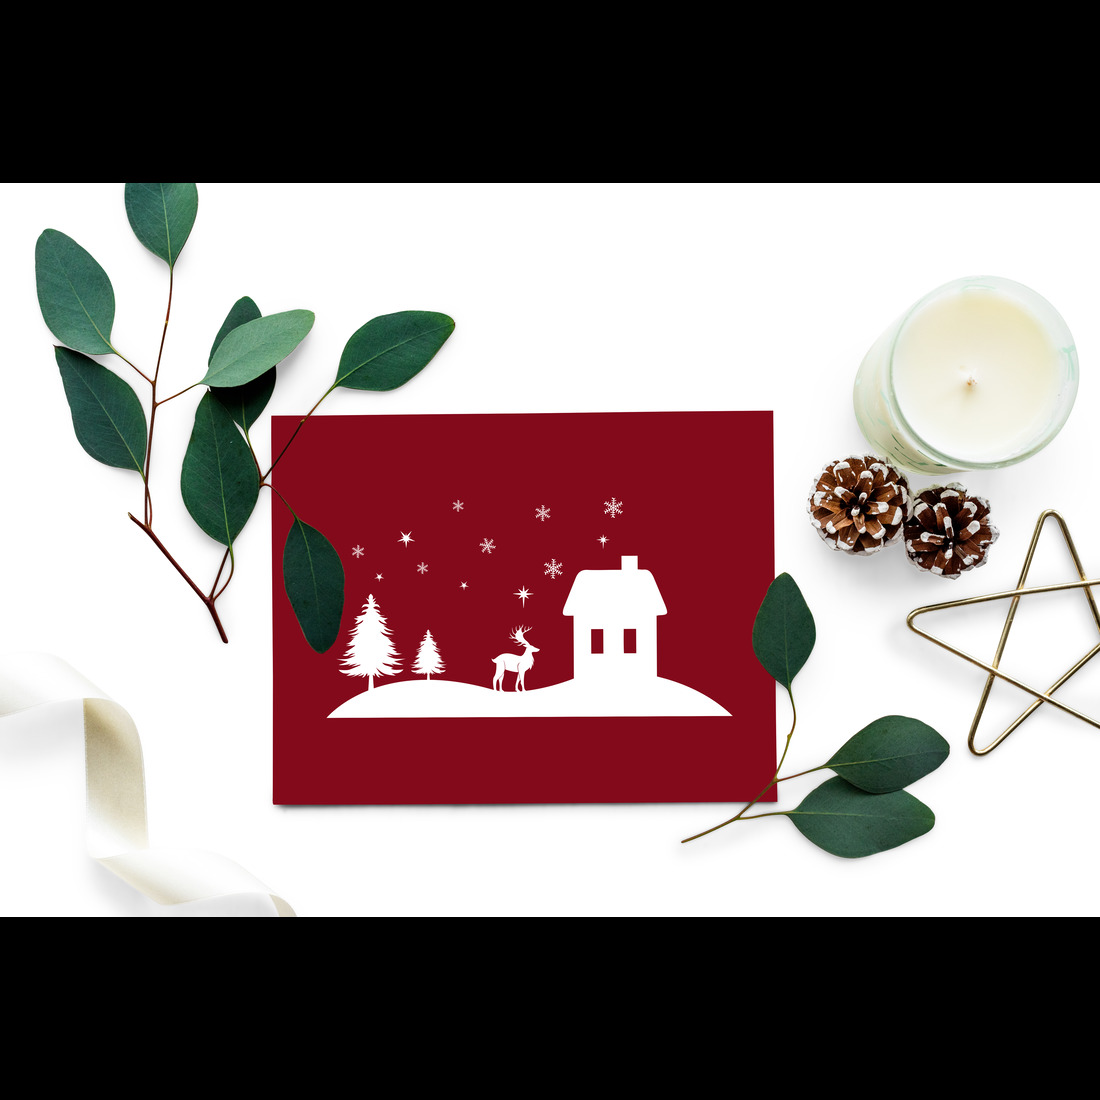 Festive Christmas SVG Design Bundle, Enchanting Winter Landscape SVG Bundle with Santa and Reindeer preview image.